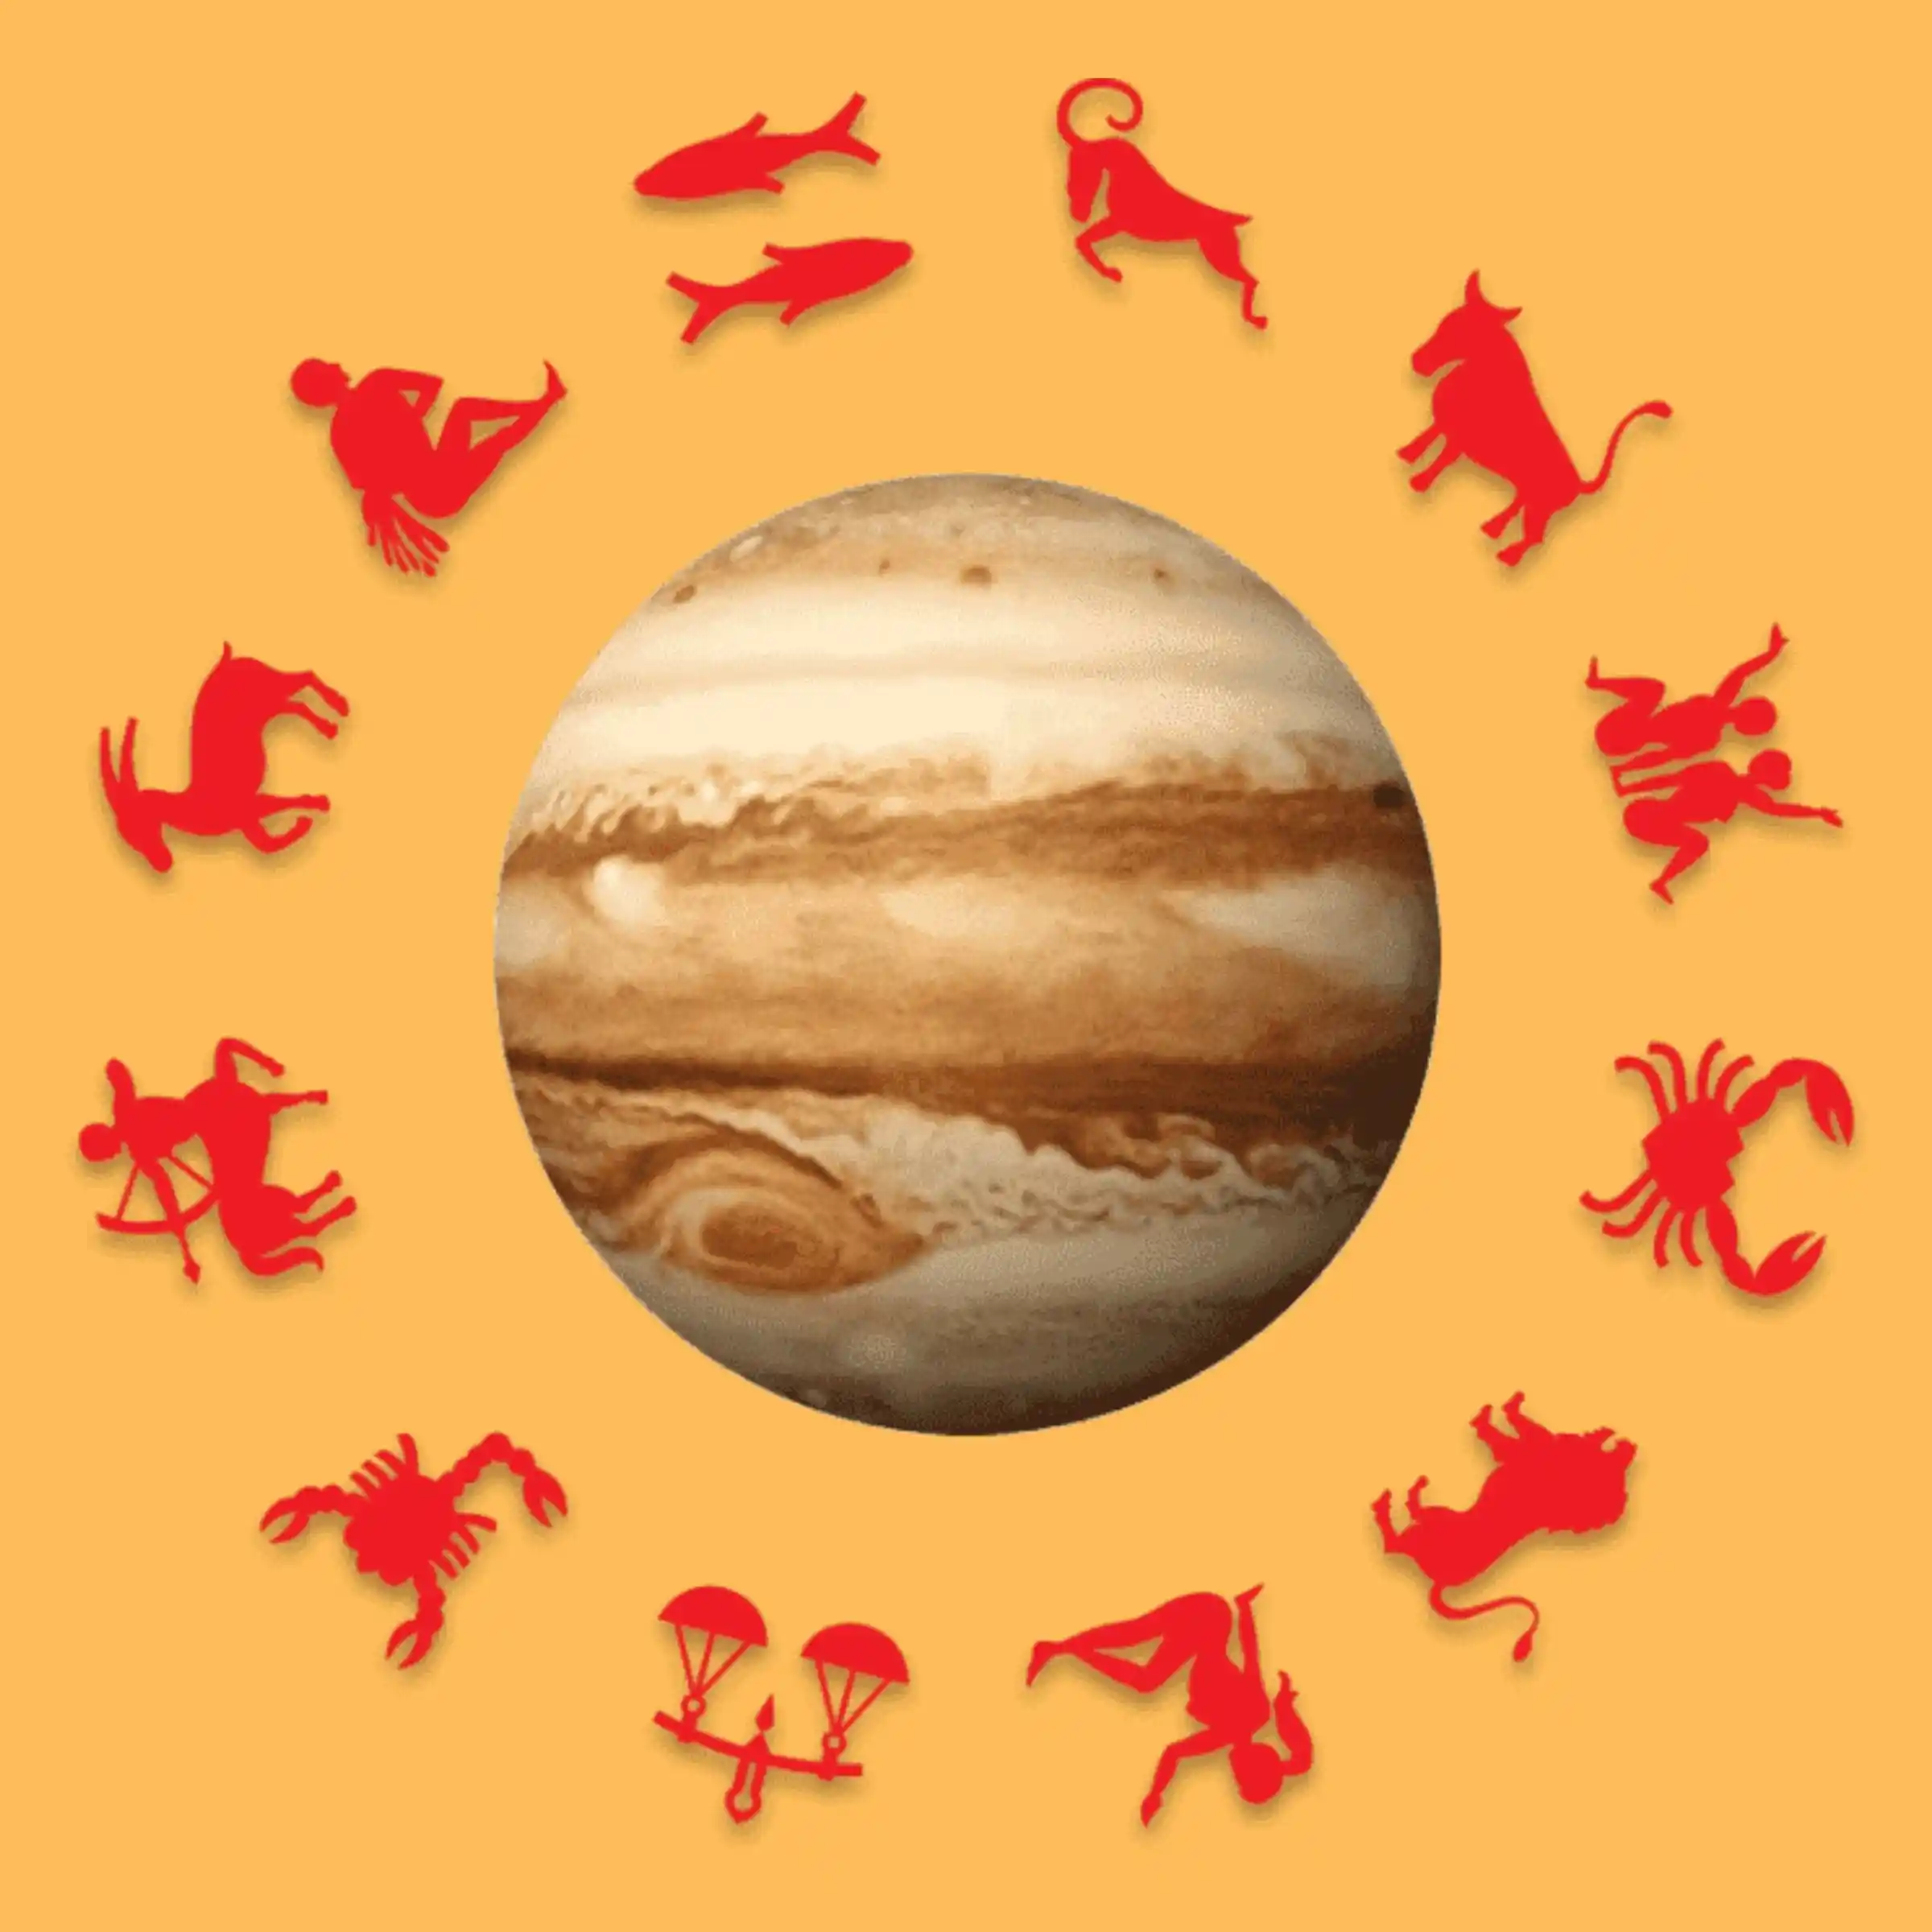 Personalised Jupiter Transit Report 2022 – Acharya Bhaṭṭacharya